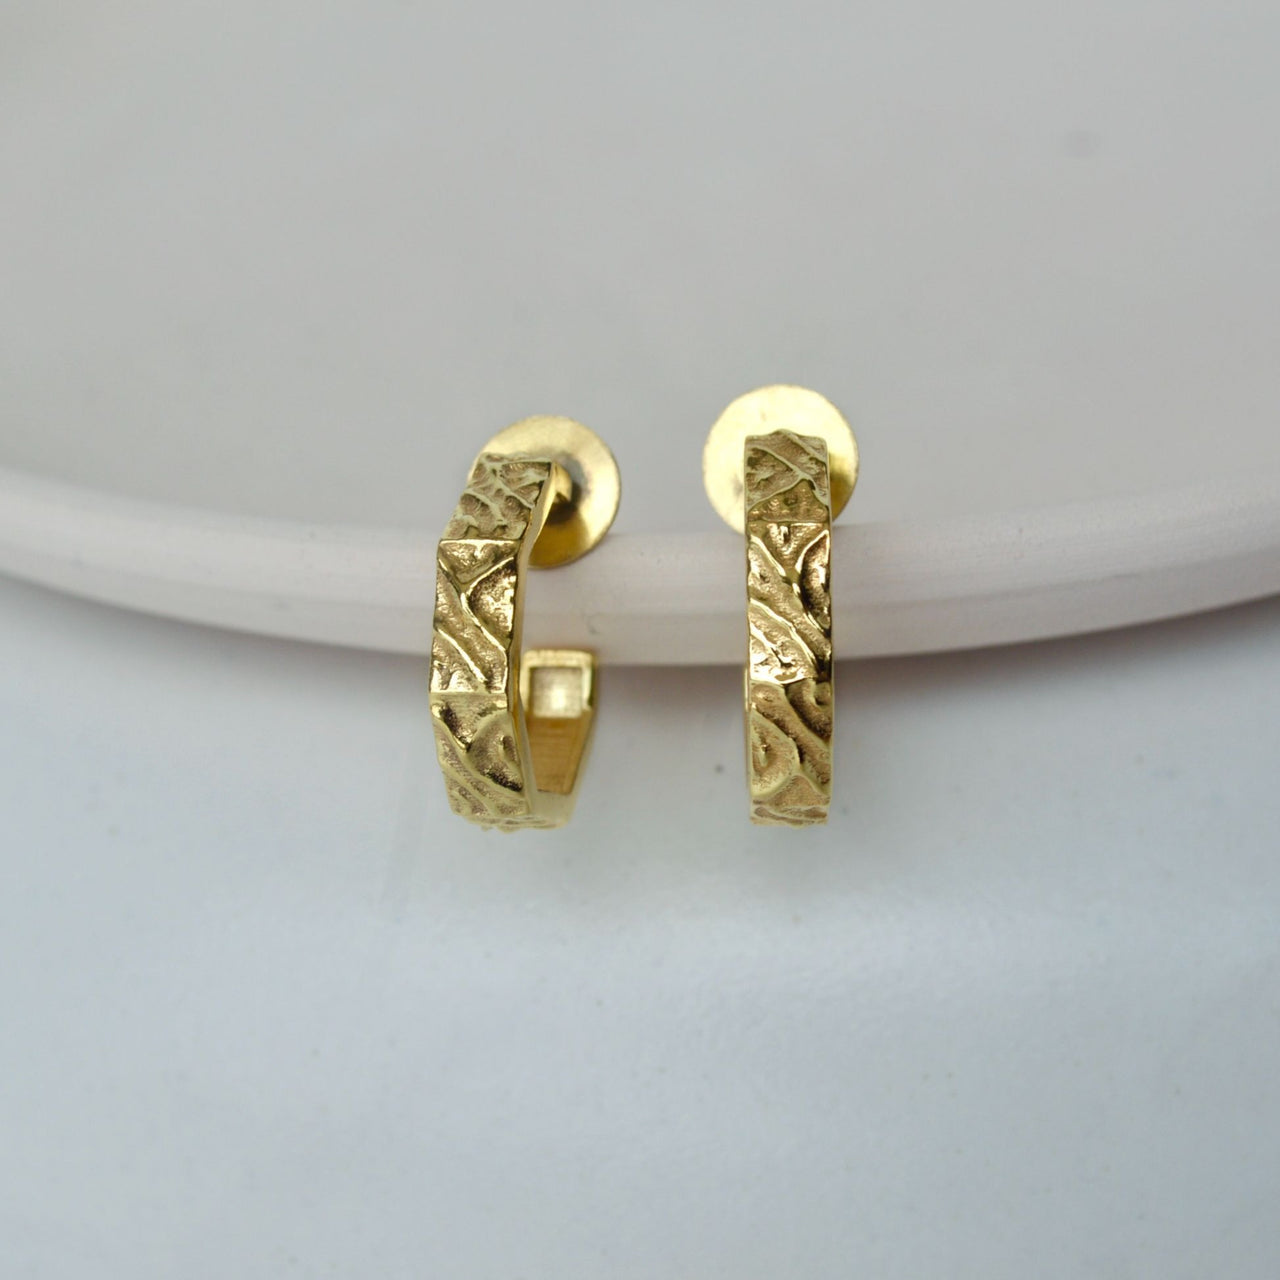 Textured Gold earrings - Open Hoop Design